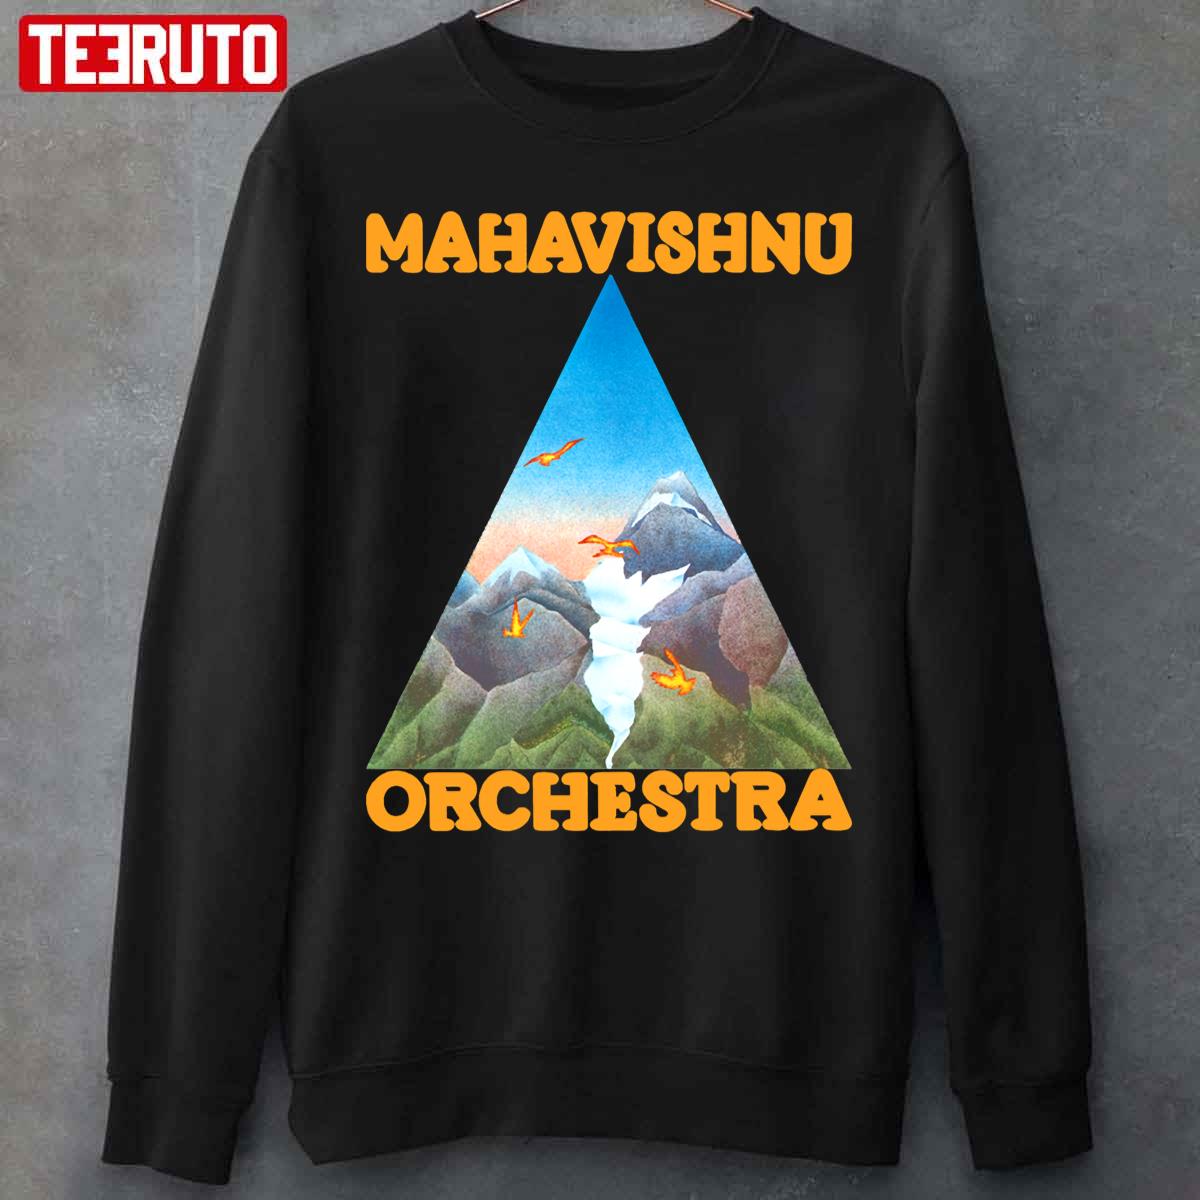 Mahavishnu Orchestra Unisex T-Shirt